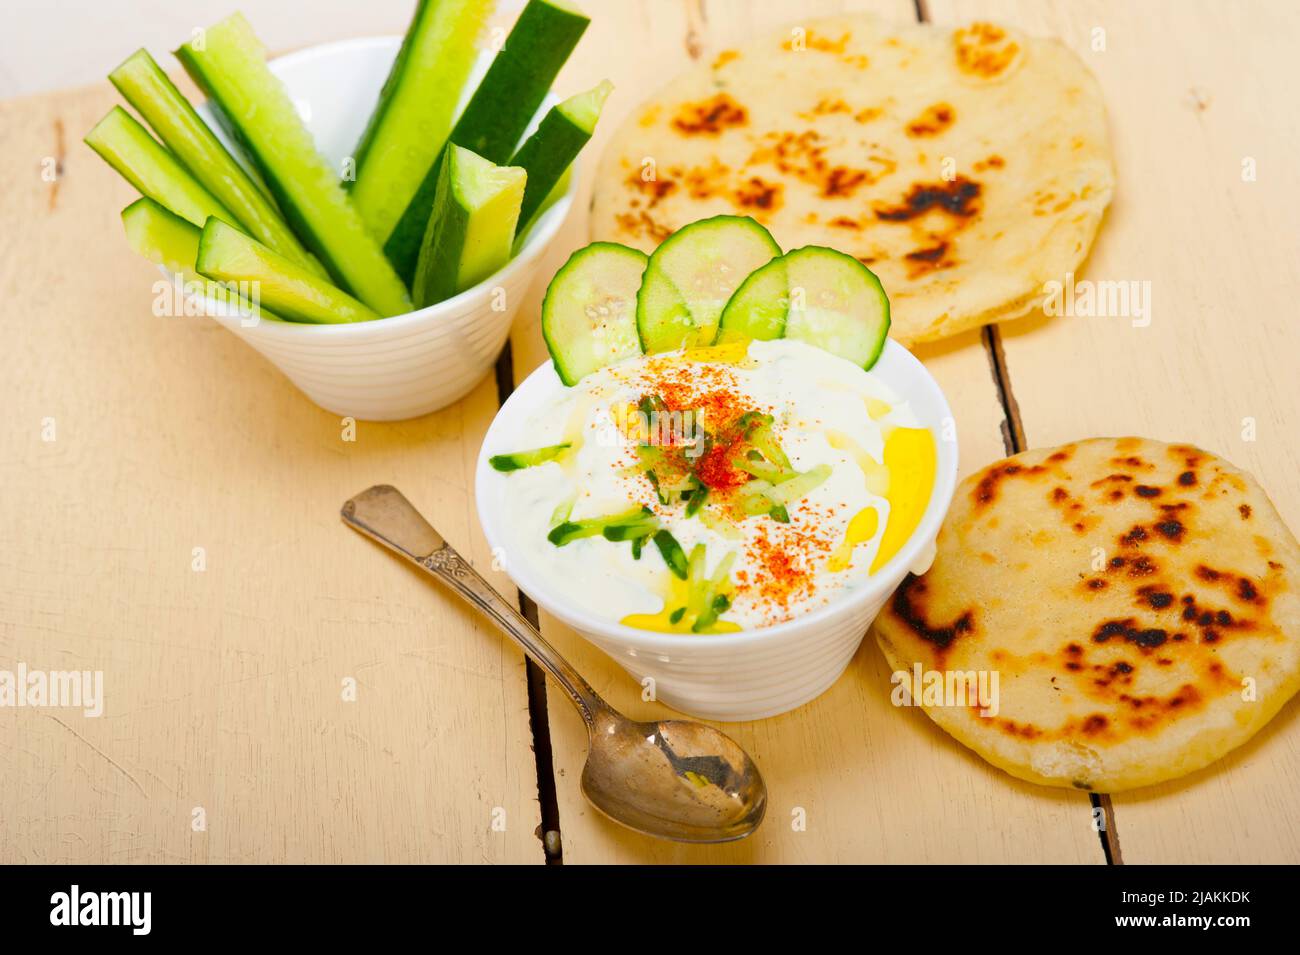 Arabischen Nahen Osten Salatit Laban wa kh'yar Khyar Bi Laban Ziege Joghurt-Gurken-Salat Stockfoto